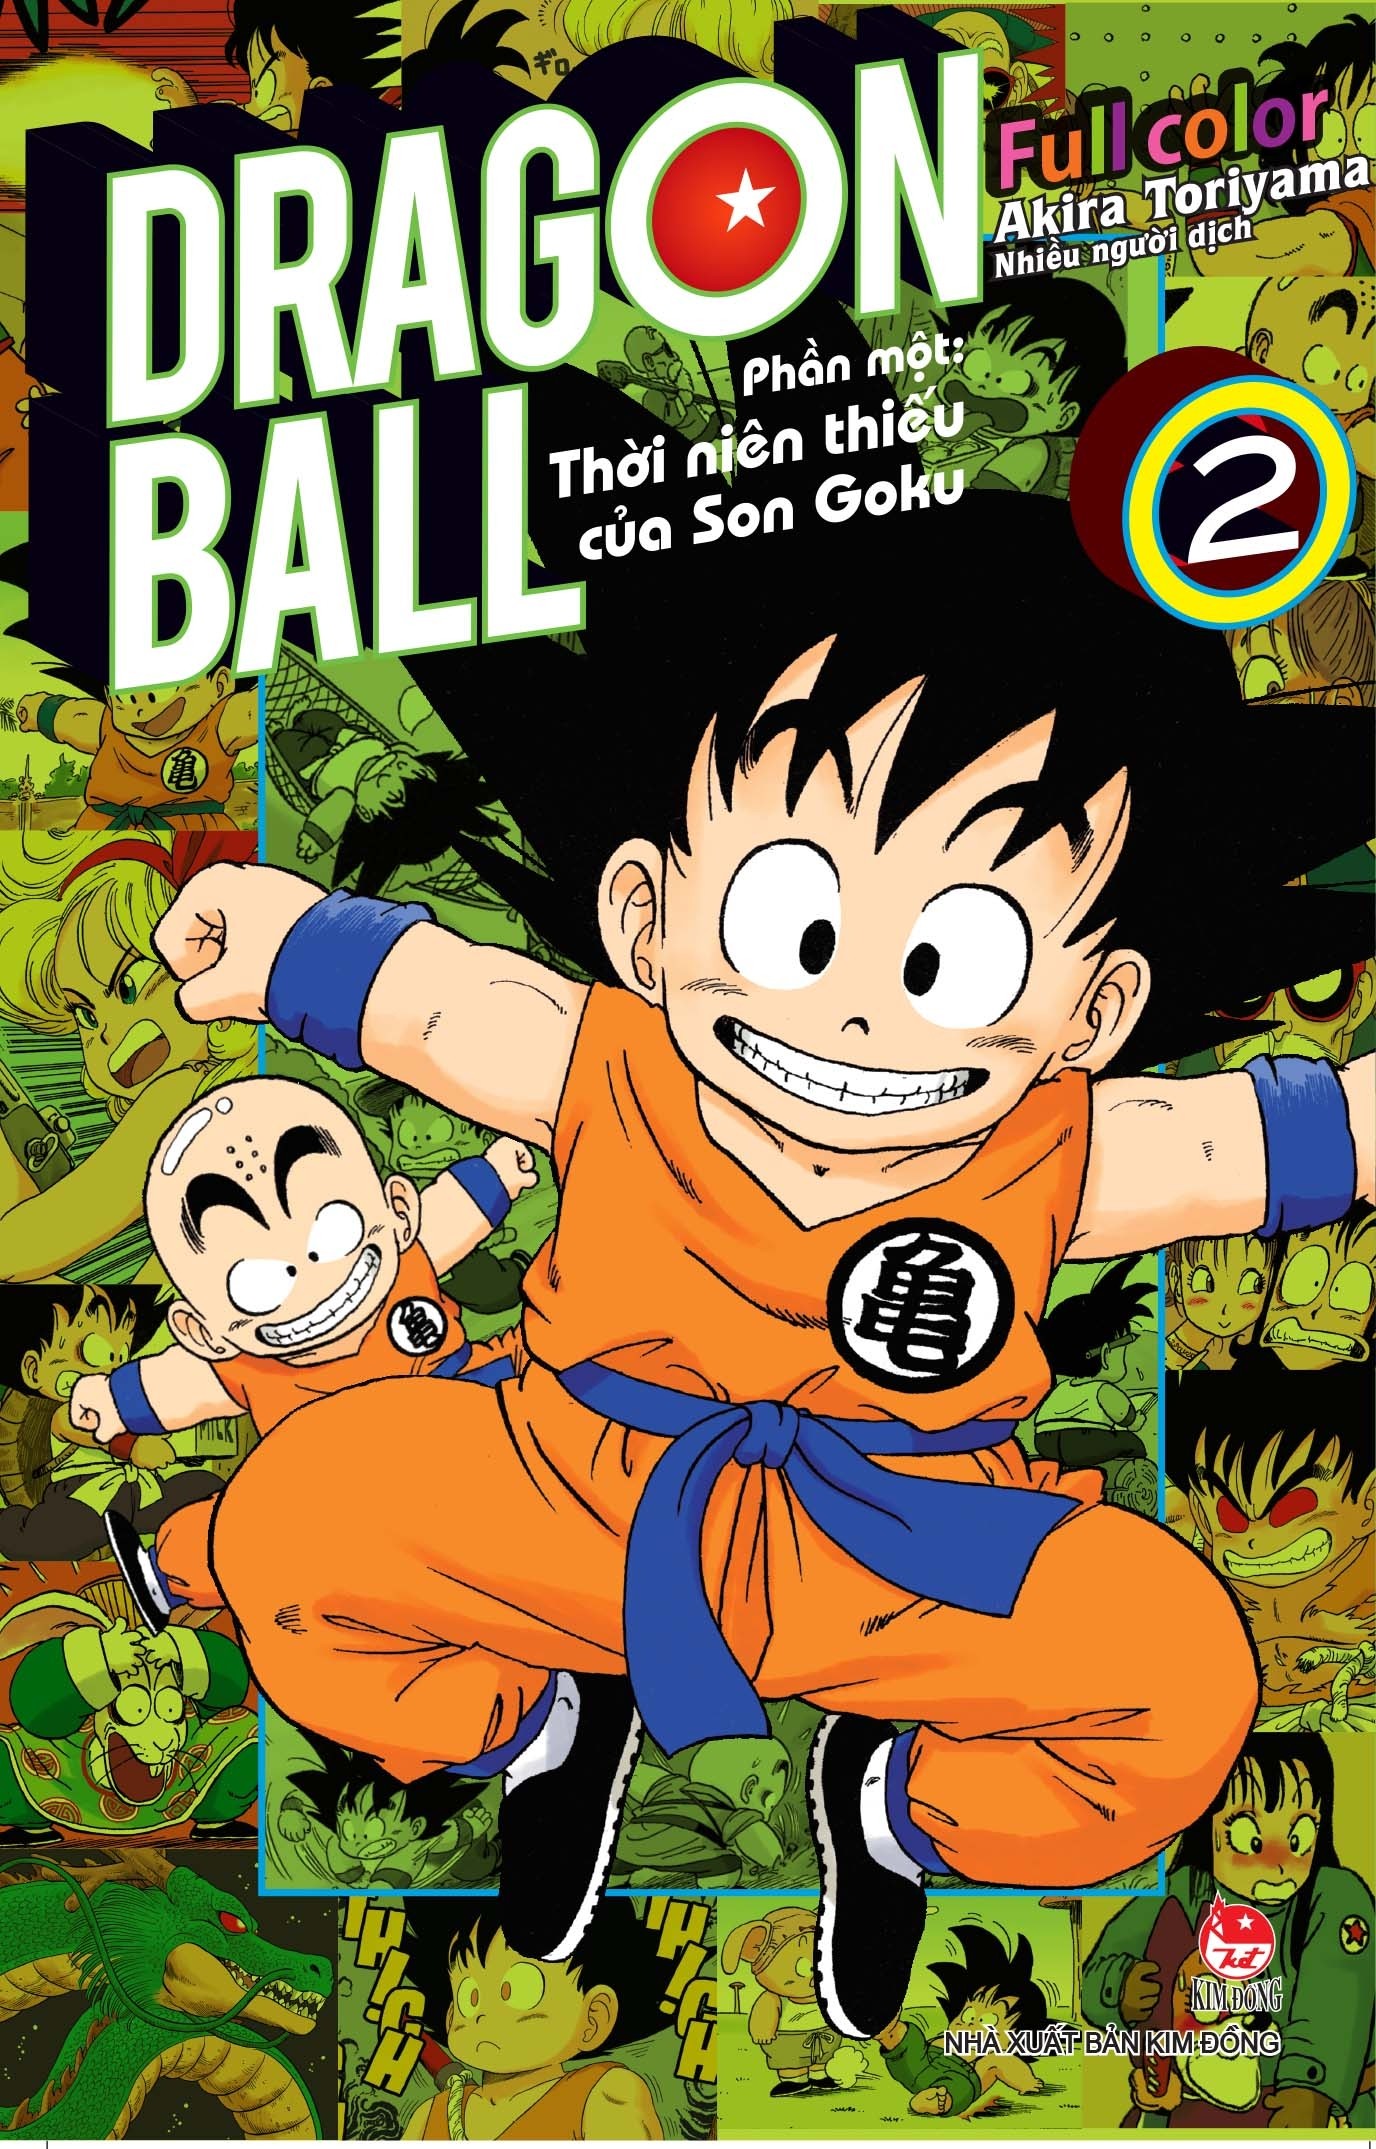 Dragon Ball Full Color - Phần Một: Thời Niên Thiếu Của Son Goku - Tập 2 |  